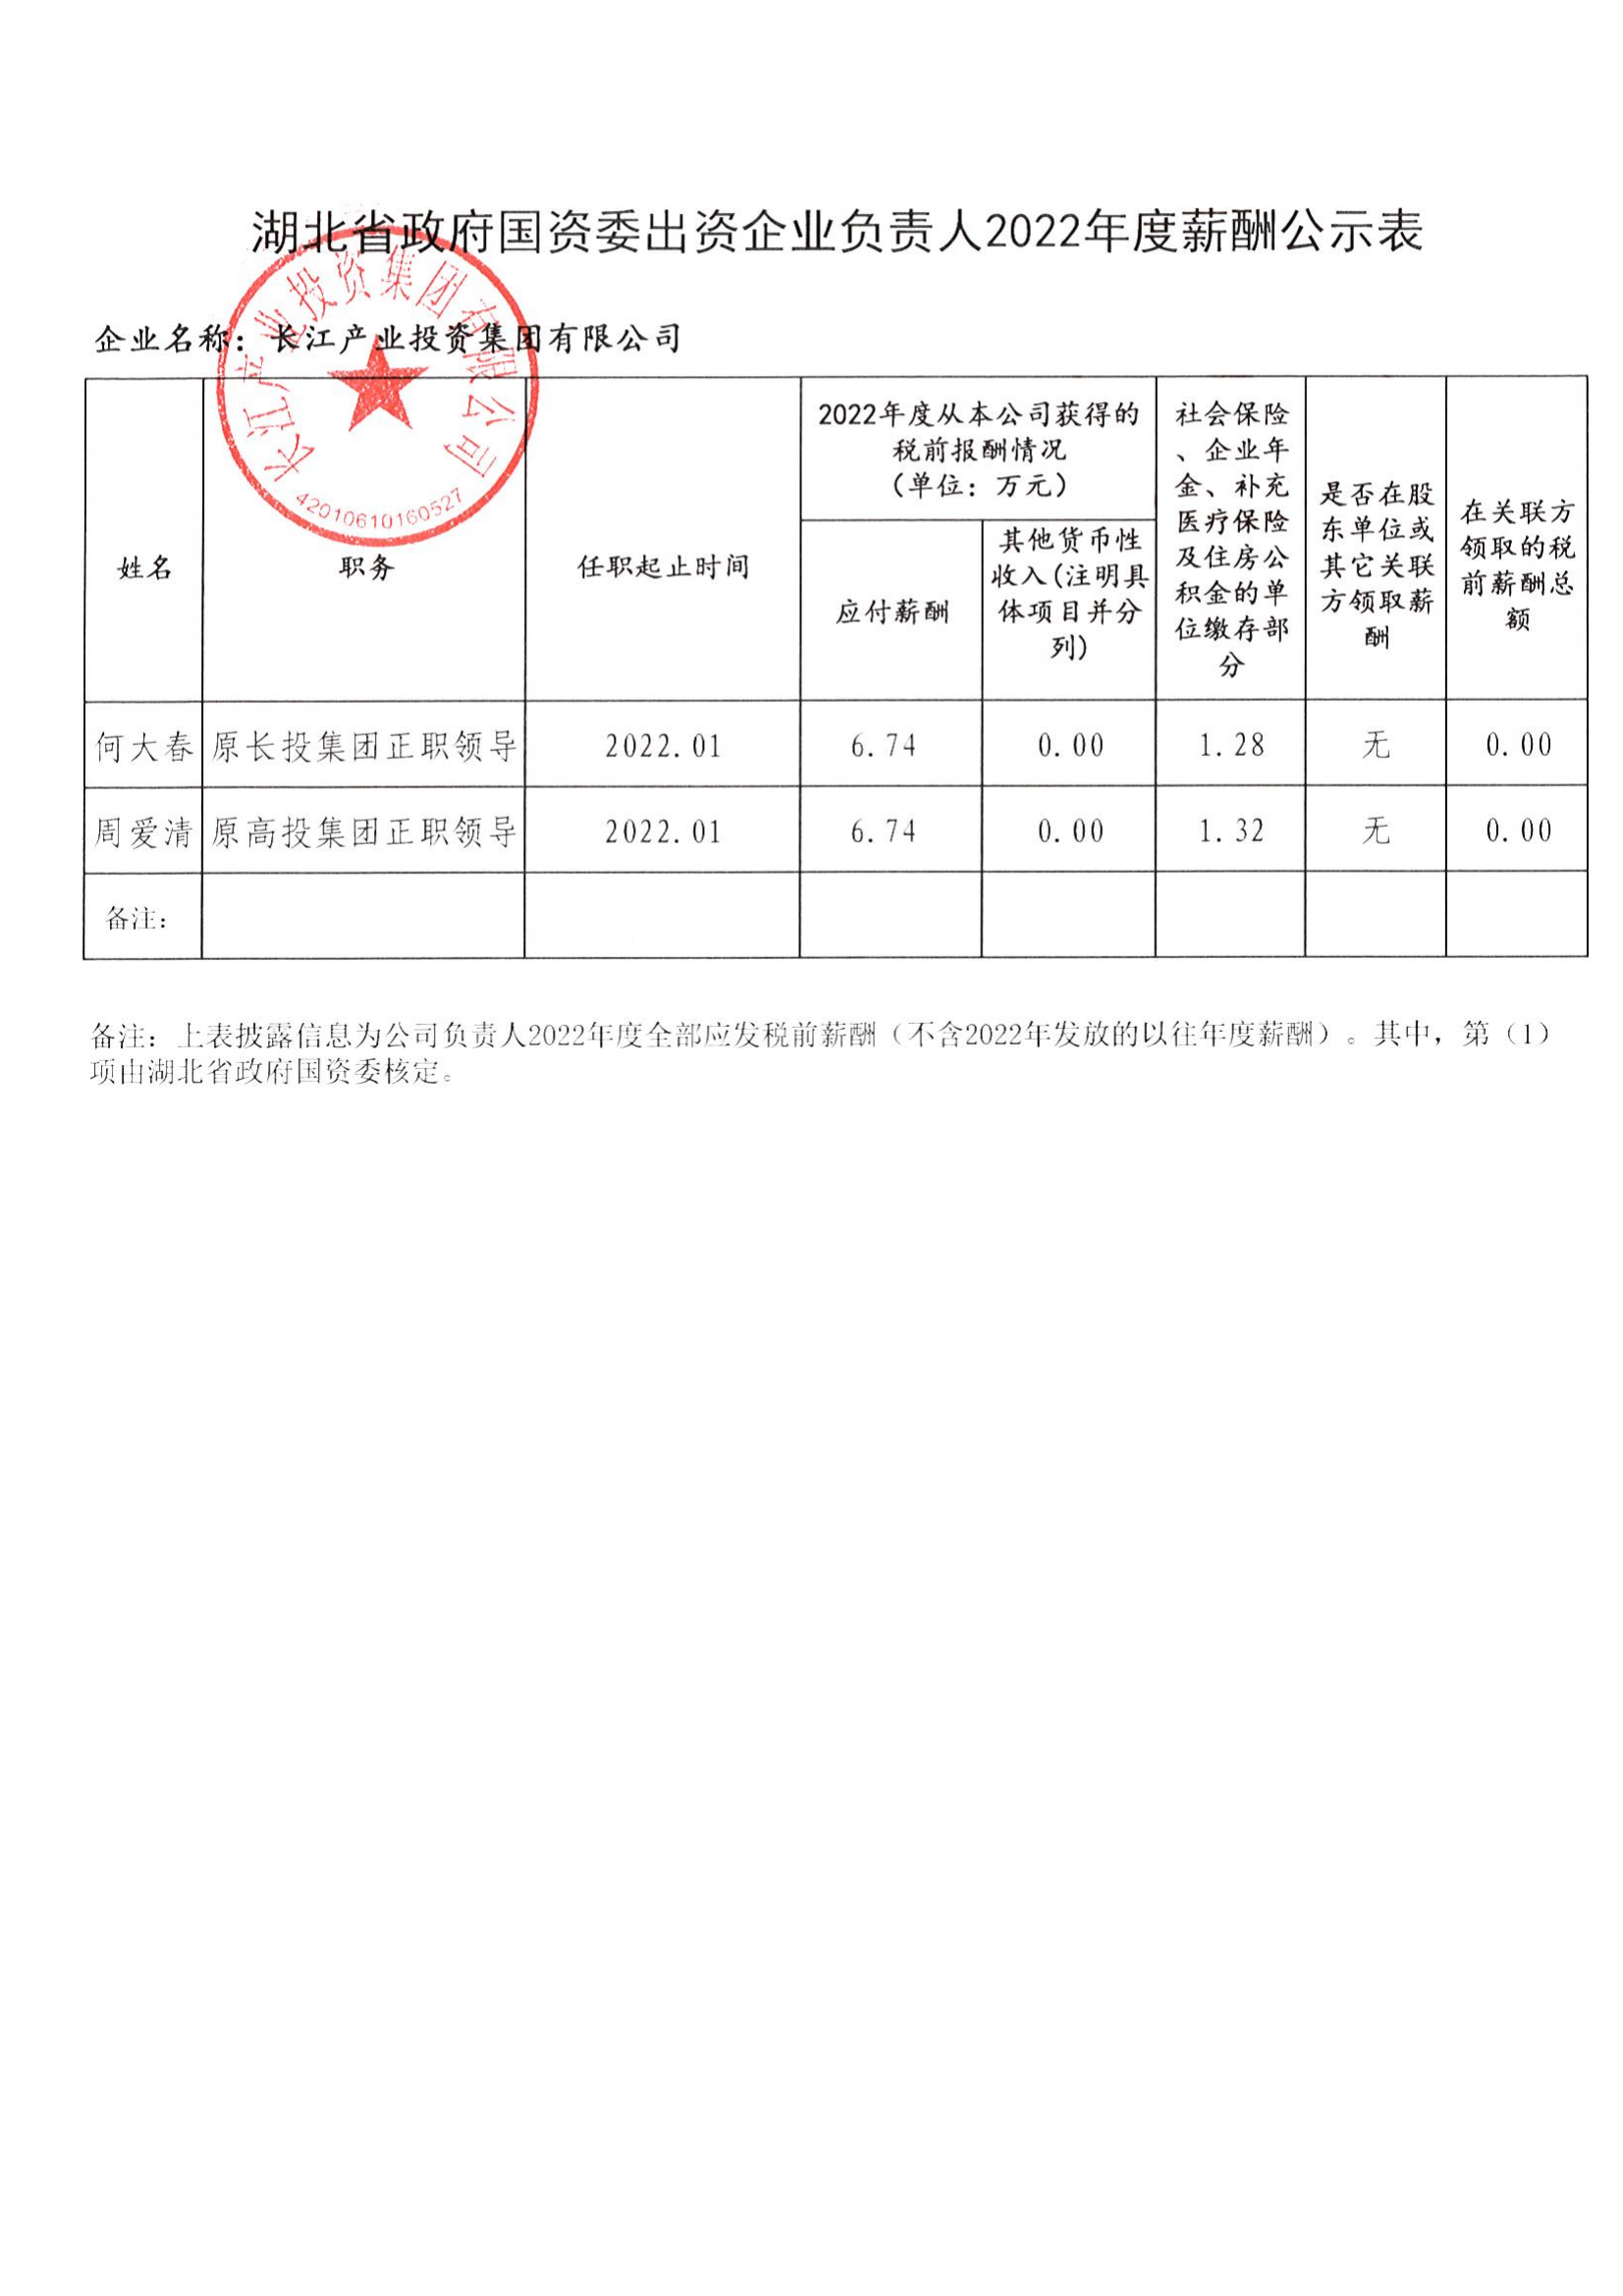 长江产业集团关于企业负责人2022年度年薪发放情况的公示_01.png